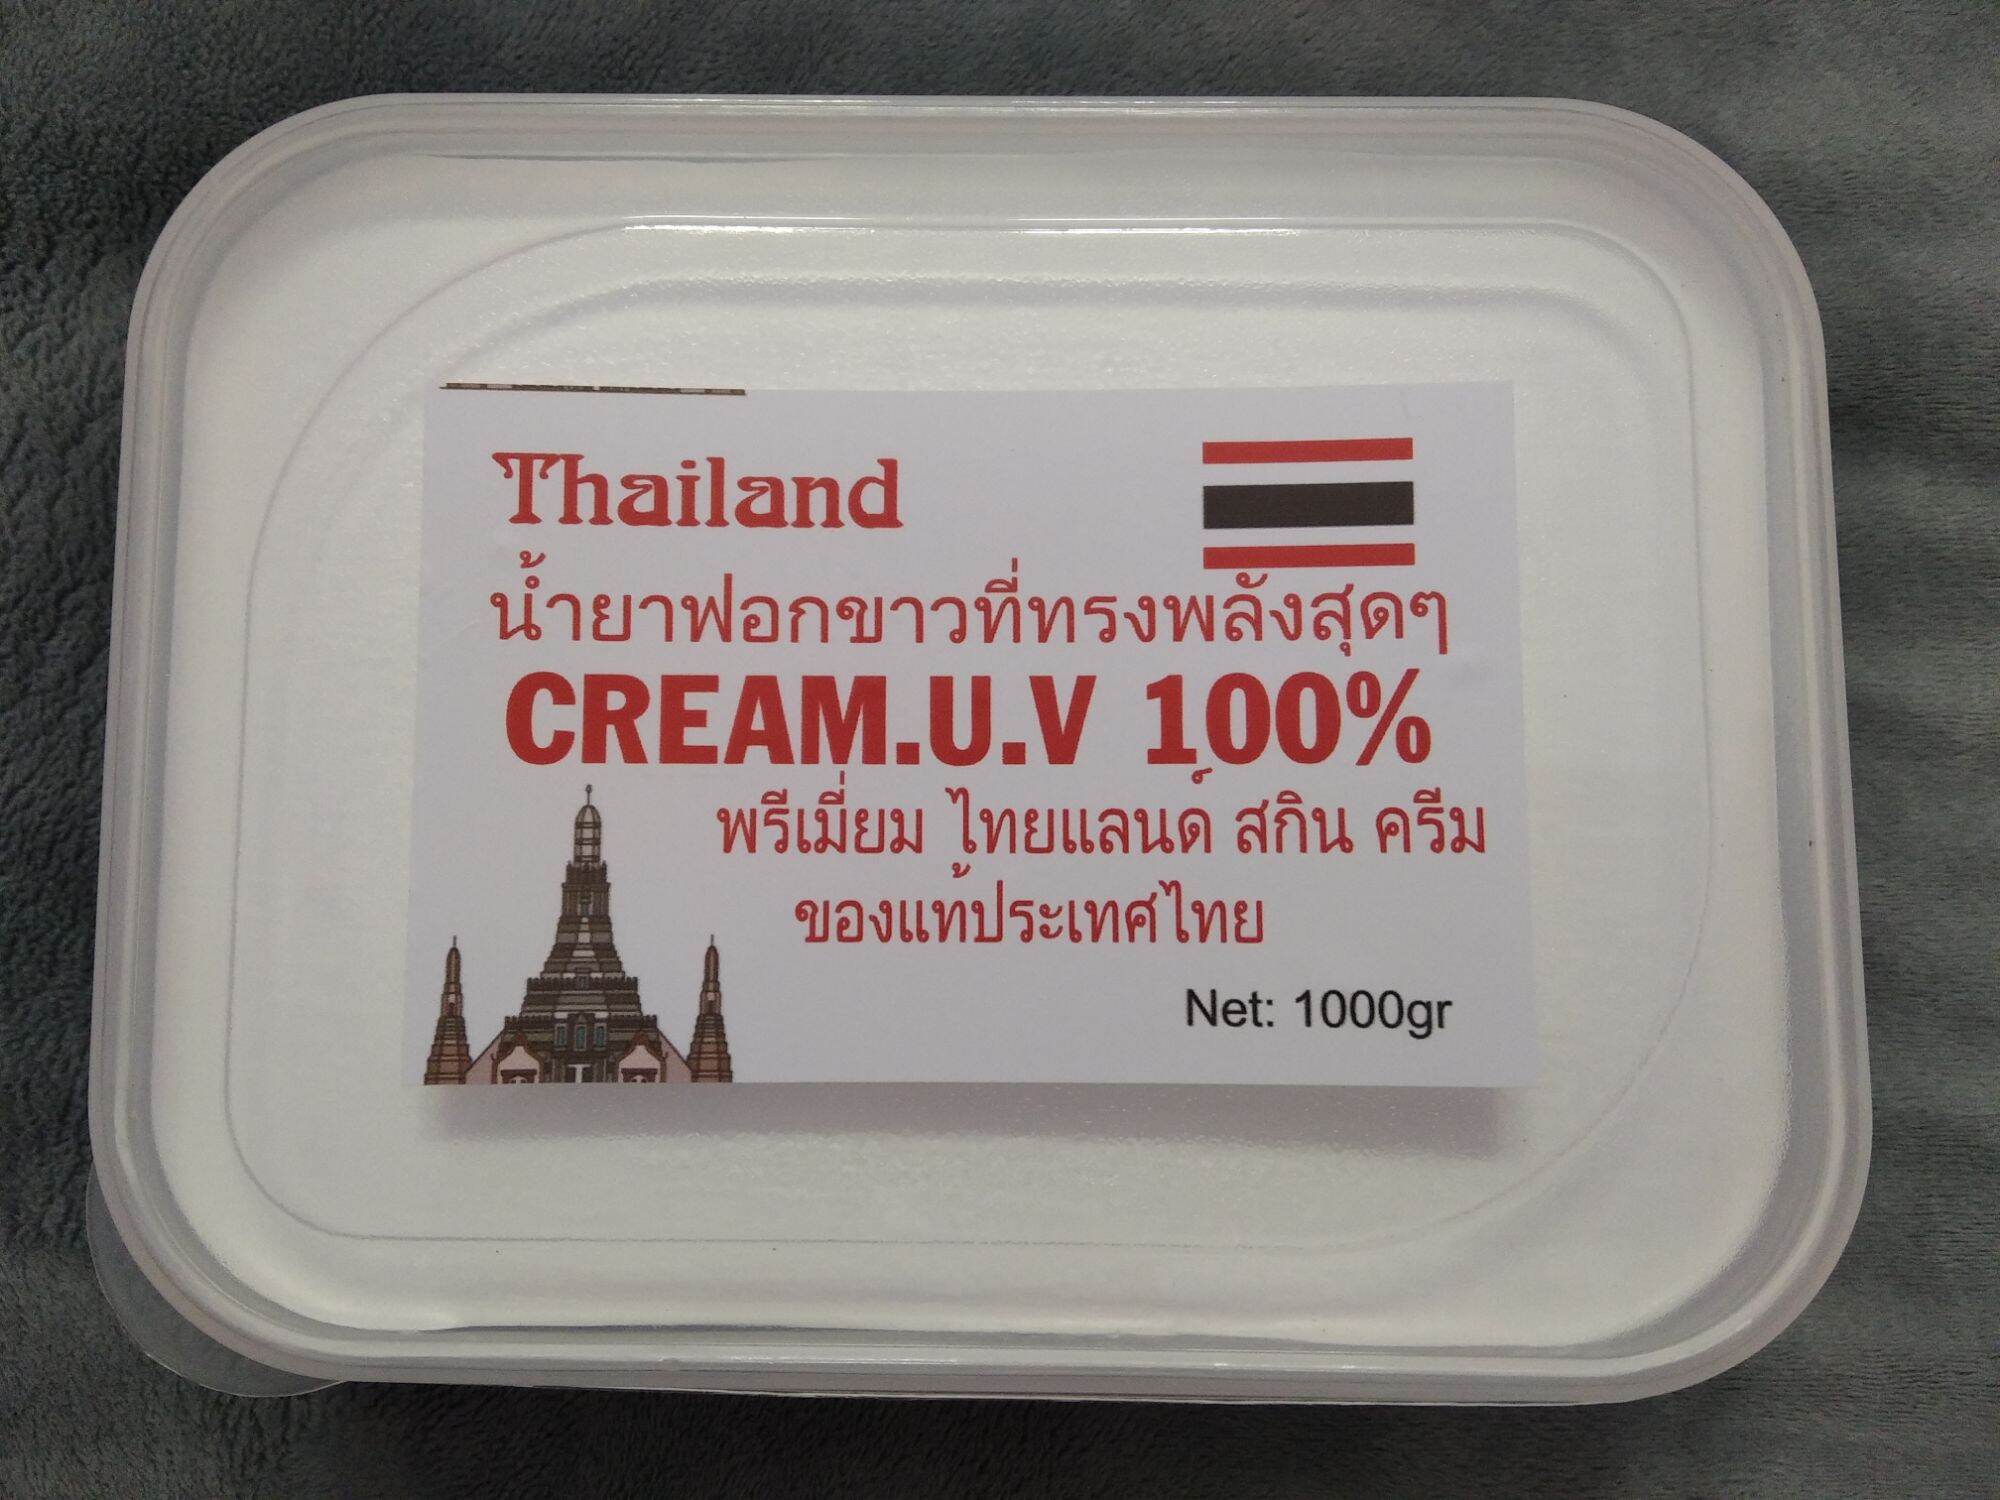 KEM CỐT NGUYÊN CHẤT THAILAND ( CỐT BẠCH ) HỘP 1kg có thể dùng trực tiếp hoặc trộn với các loại kem body , serum ..v..vv